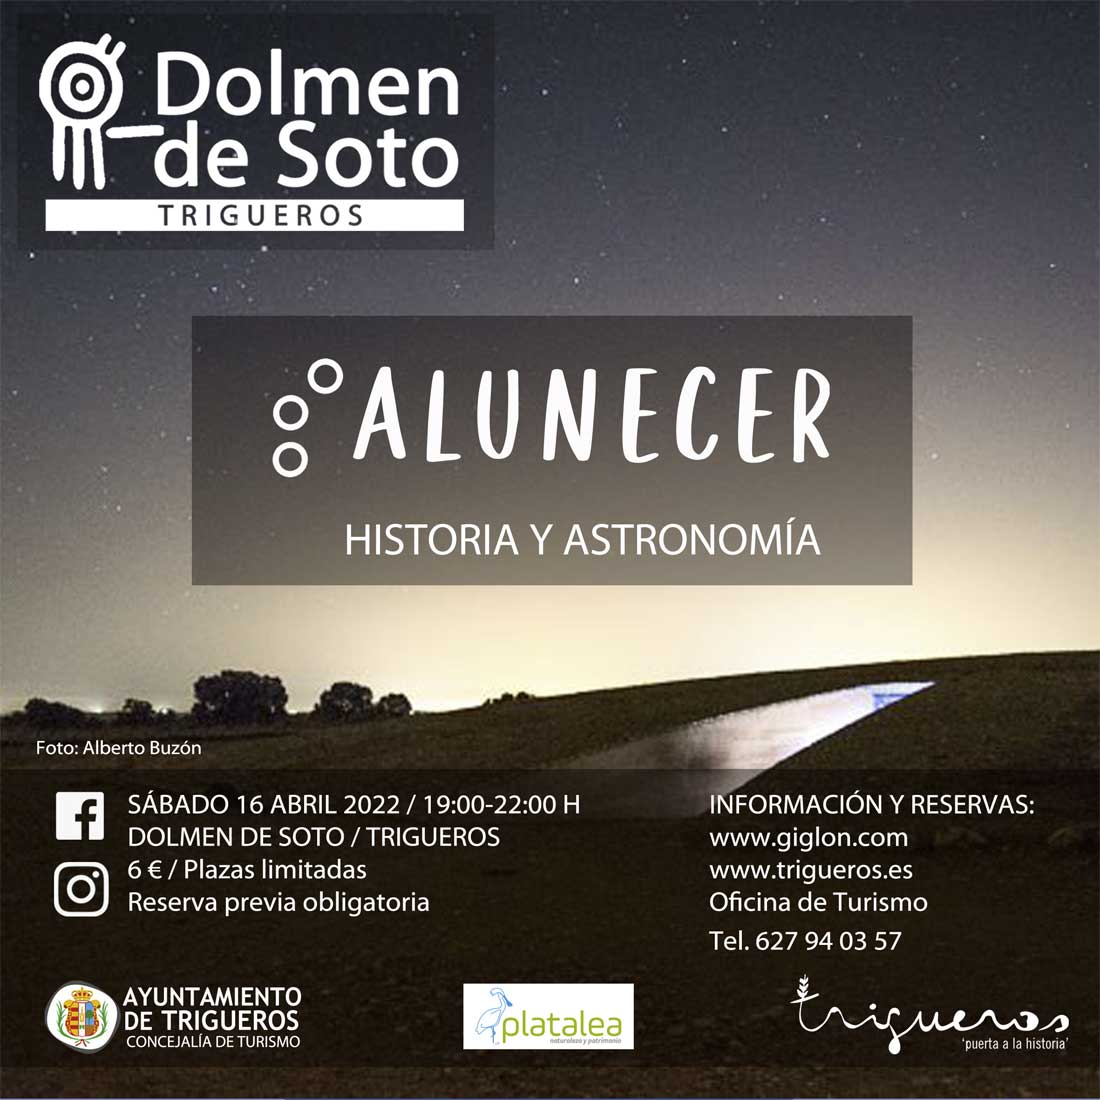 Alunecer en el Dolmen de Soto Trigueros 16 de abril 2022